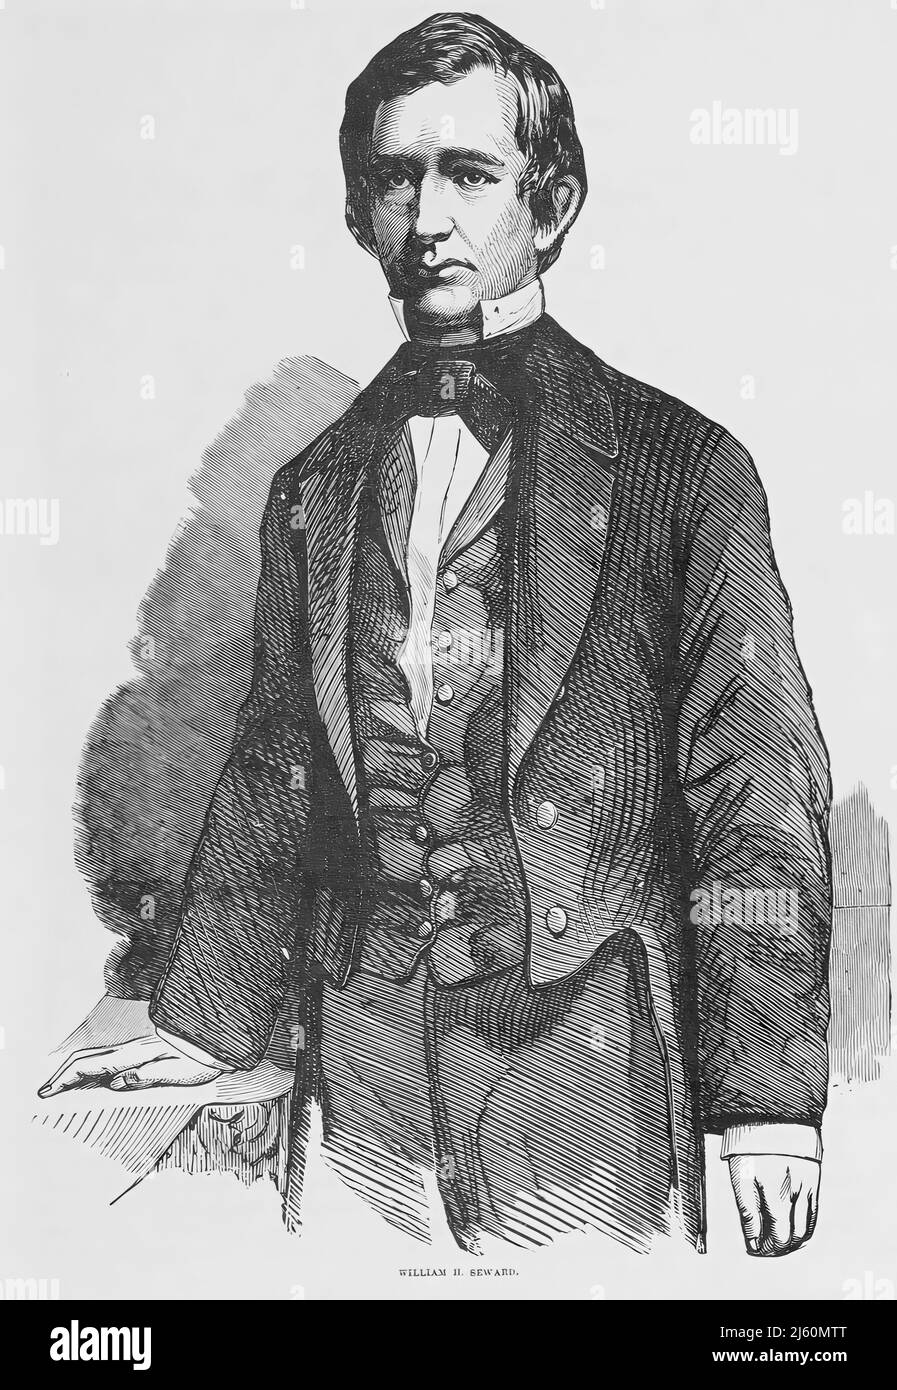 Portrait de William Henry Seward, secrétaire d'État des États-Unis pendant la guerre de Sécession. illustration du siècle 19th Banque D'Images